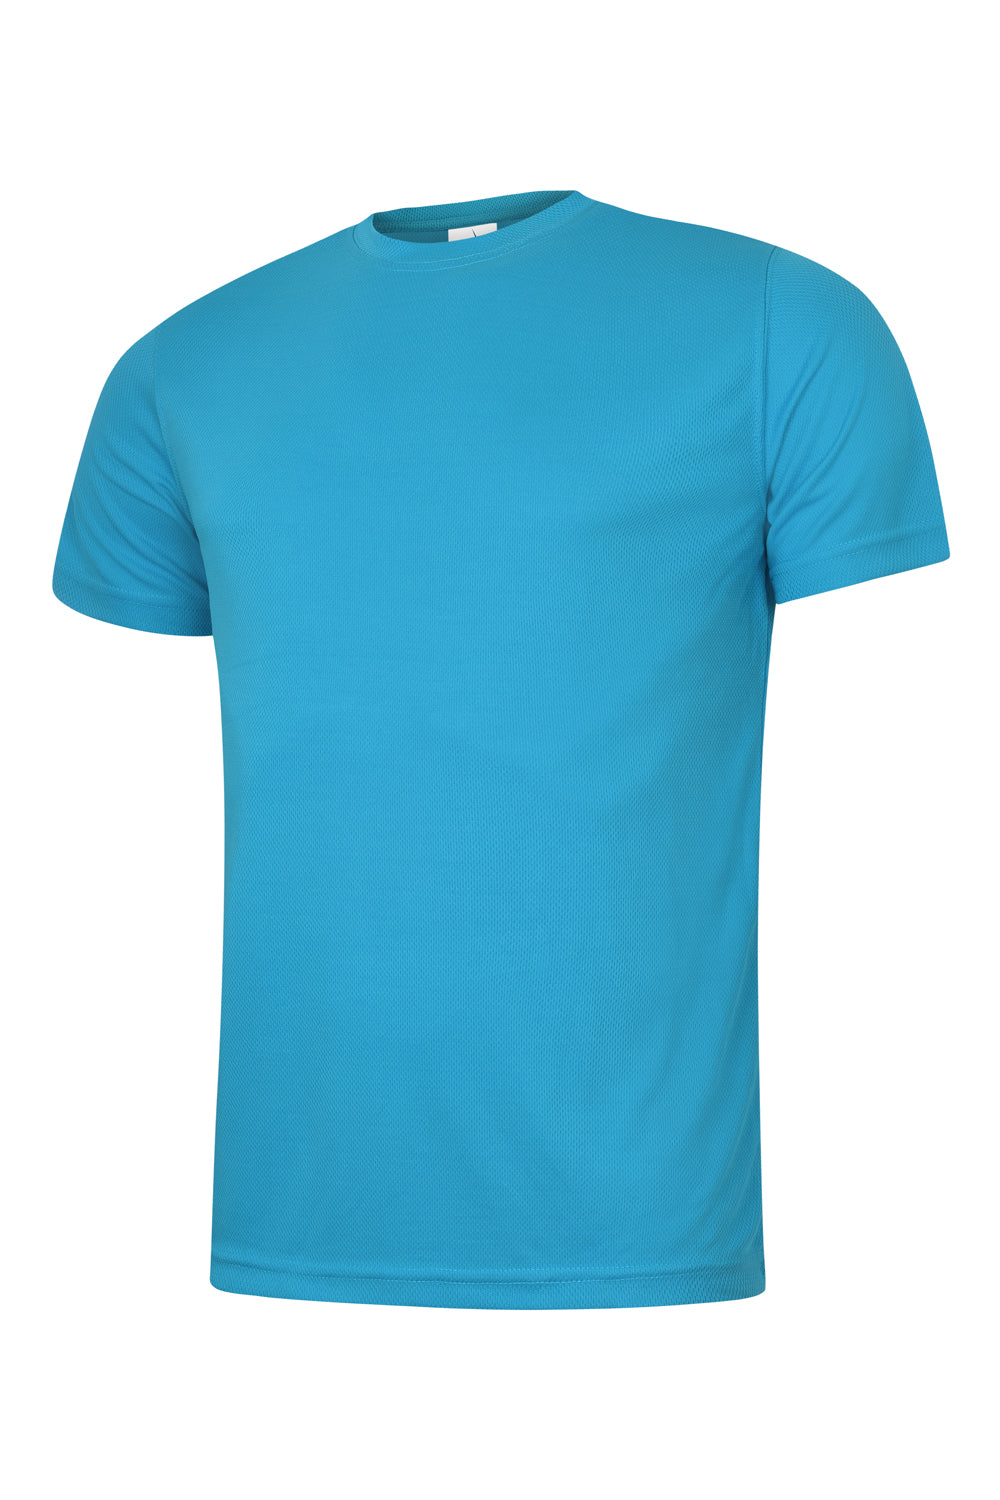 Uneek Mens Ultra Cool T Shirt UC315 - Sapphire